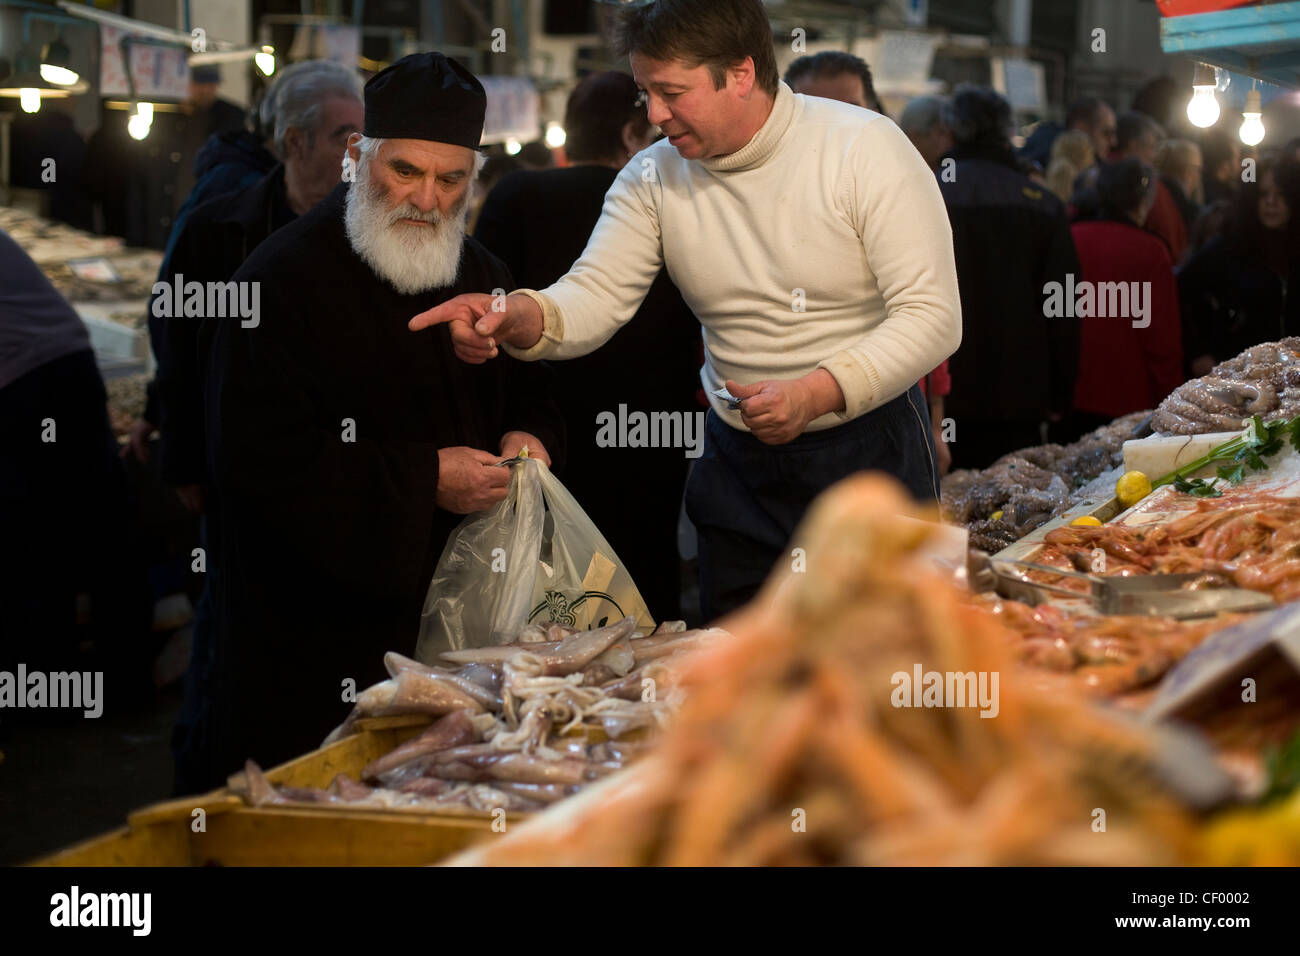 Griechisch-orthodoxe Priester kauft Meeresfrüchte aus einem Stall in Athen Zentralmarkt auf Athinas Street. Athen, Griechenland Stockfoto